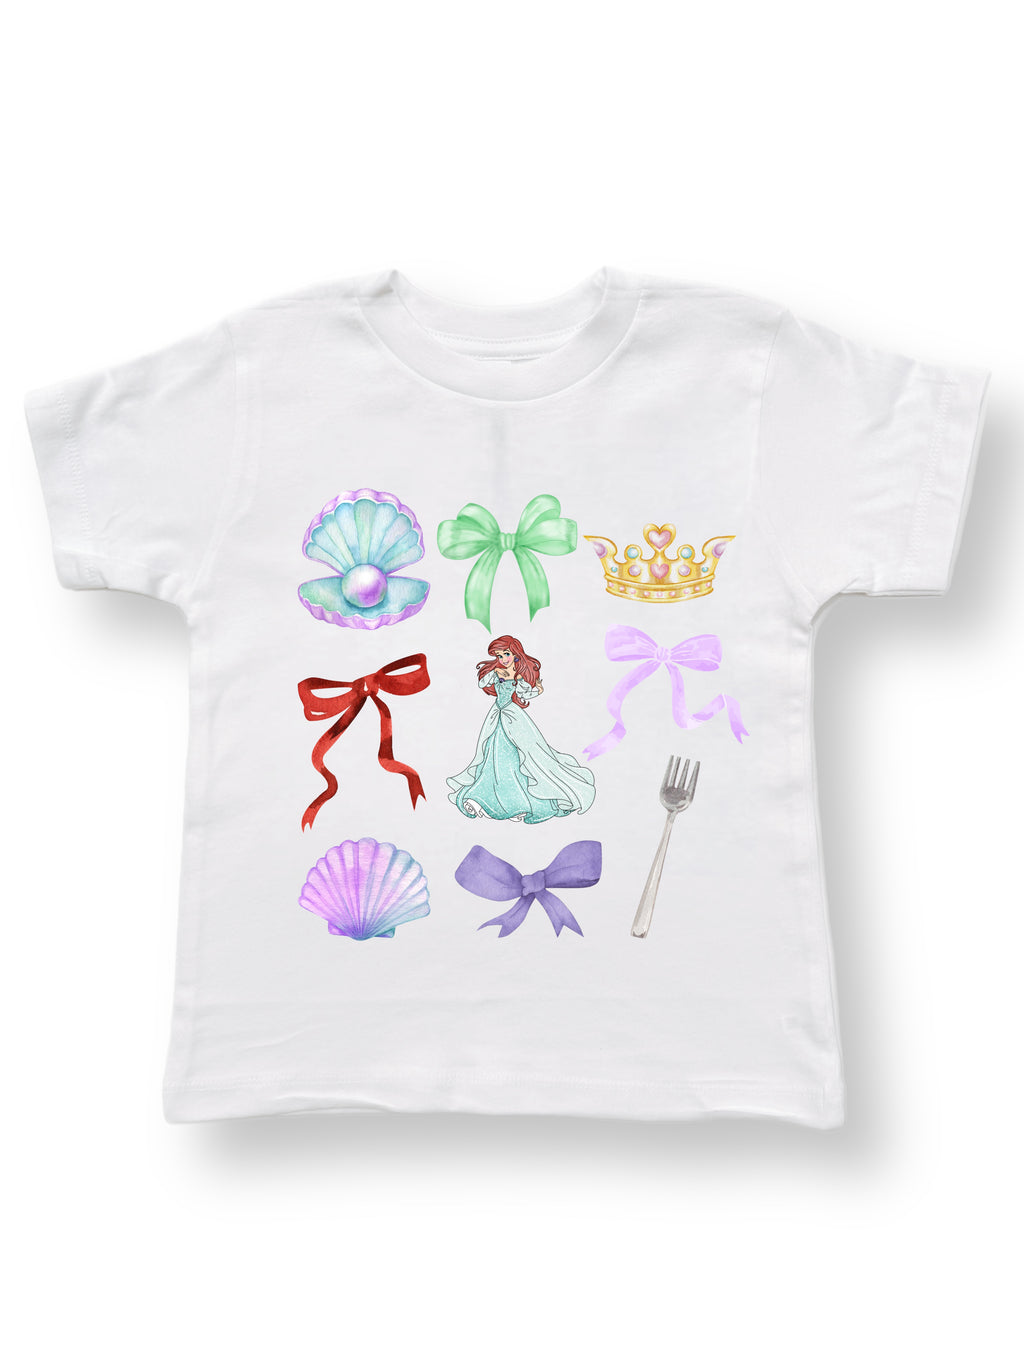 Favorite Things Tee- Mermaid Princess